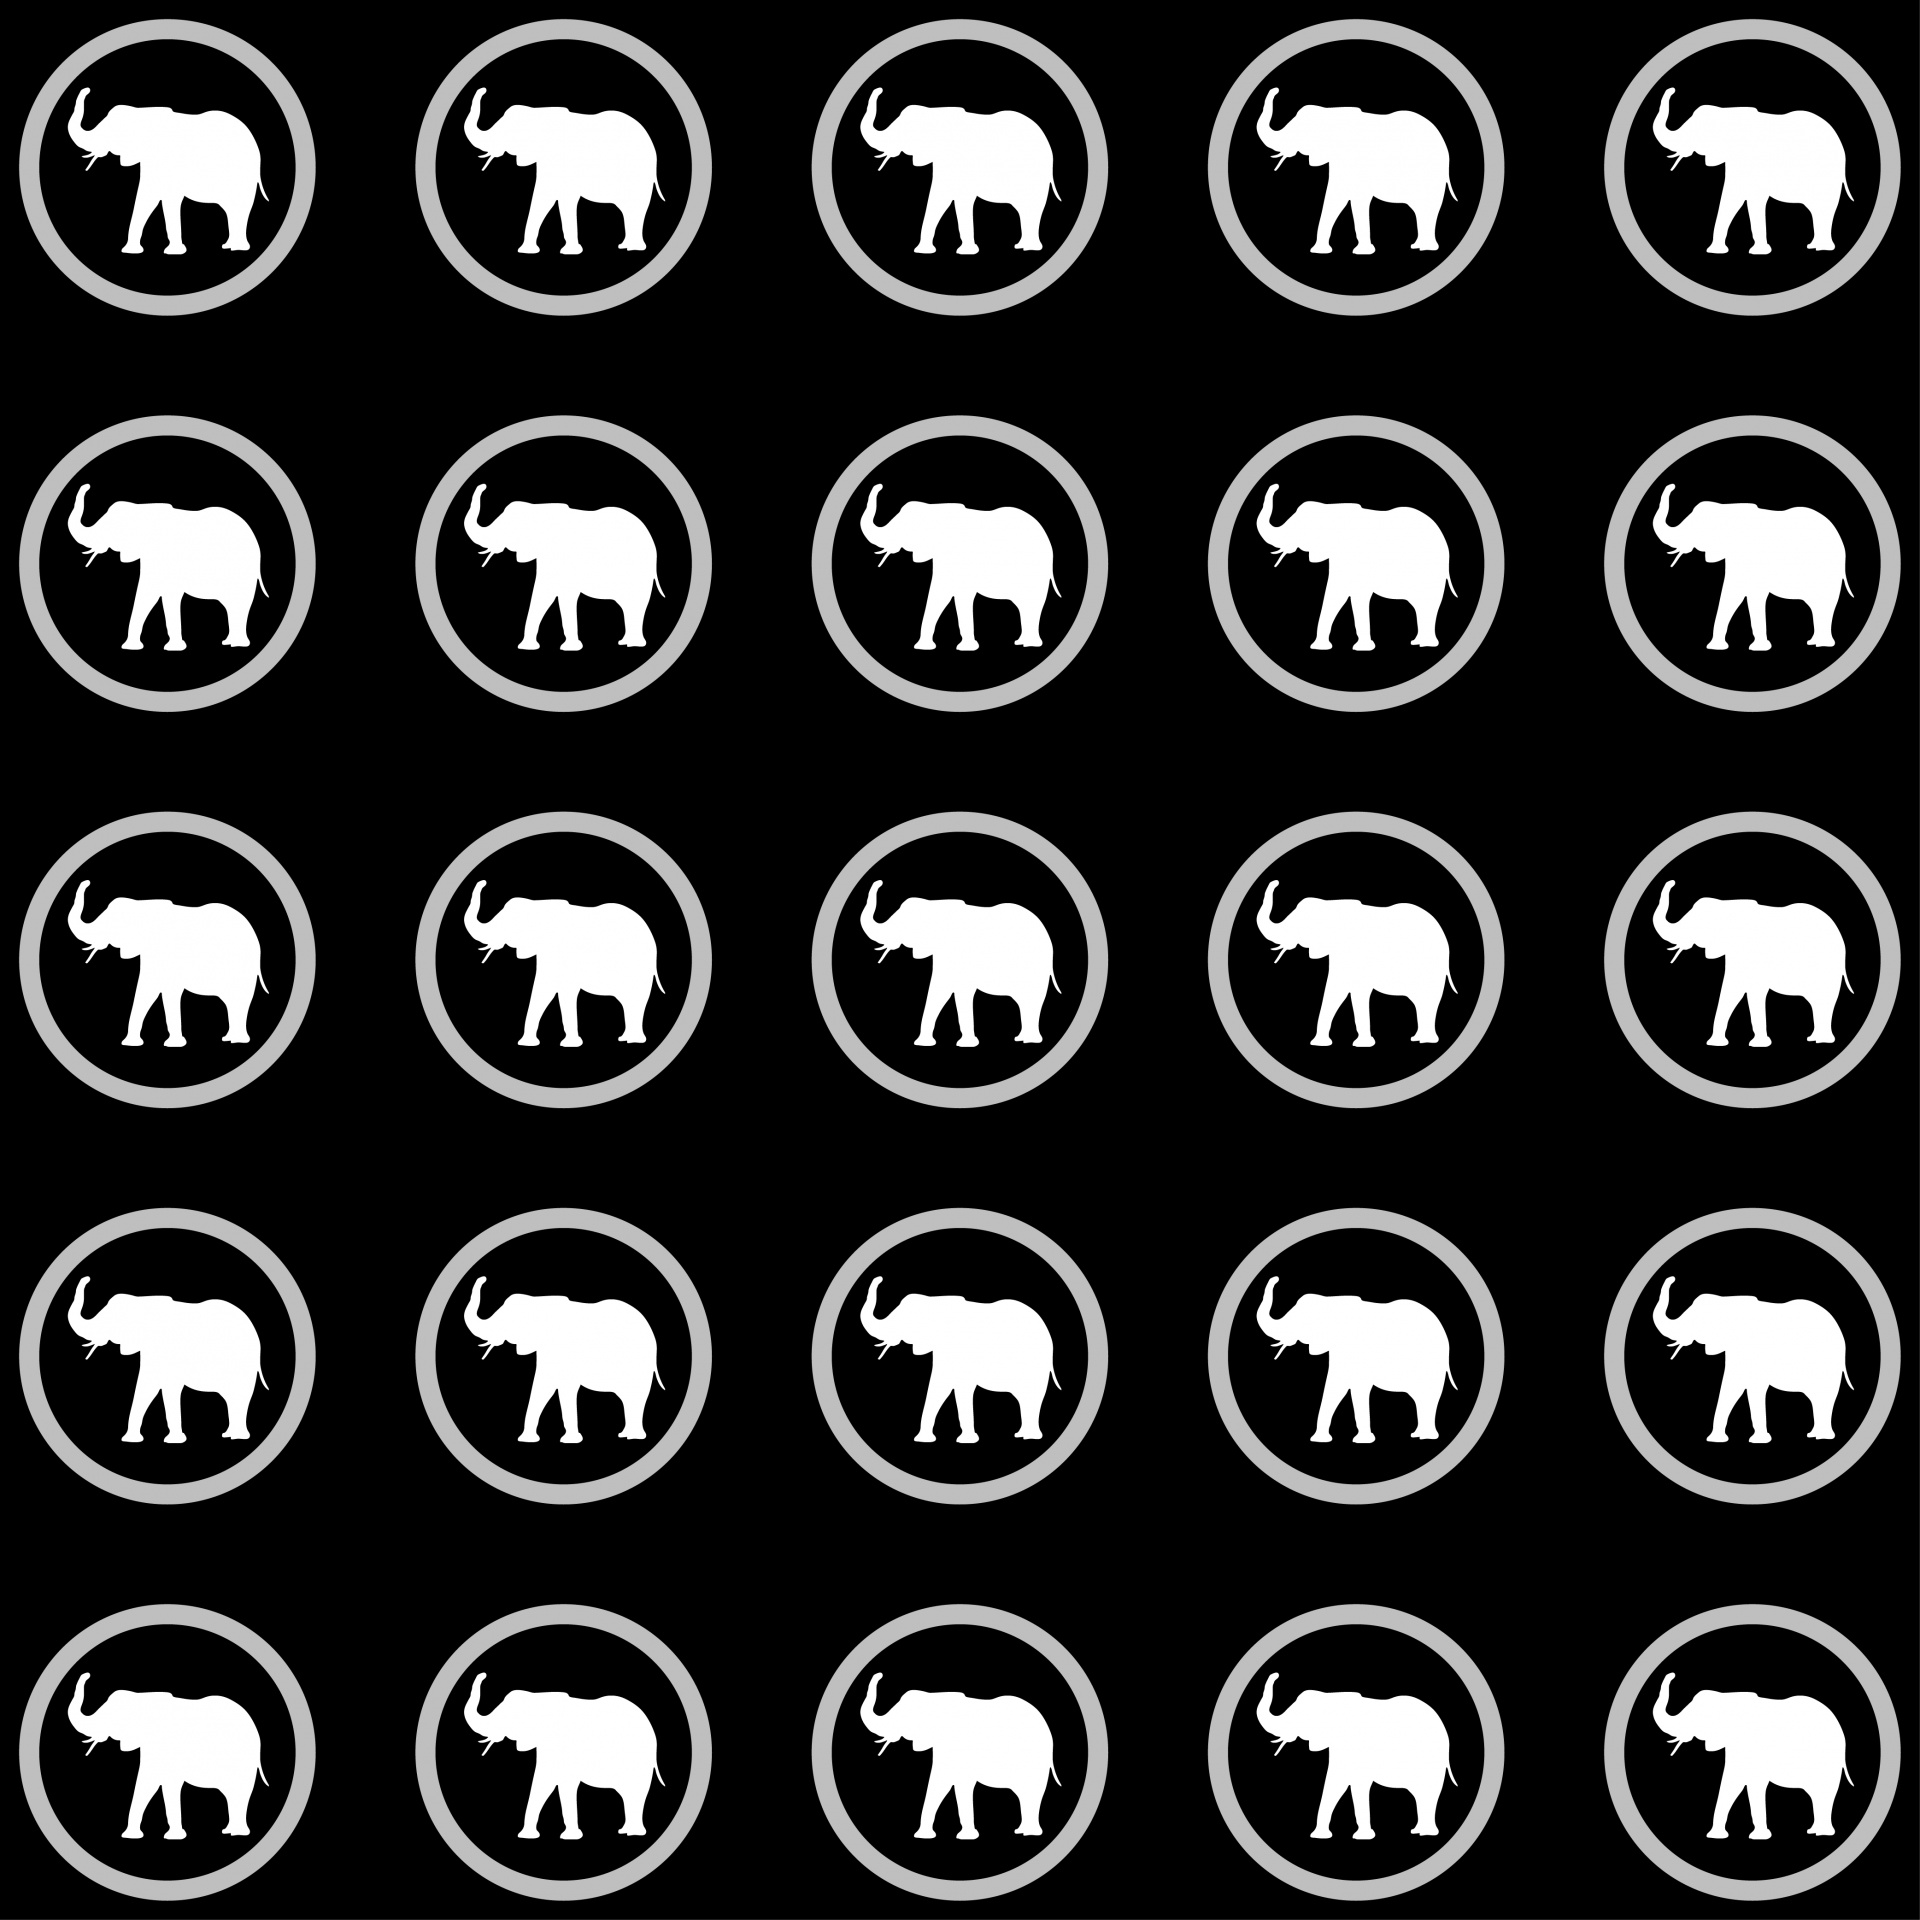 Wallpaper Elephant Pattern